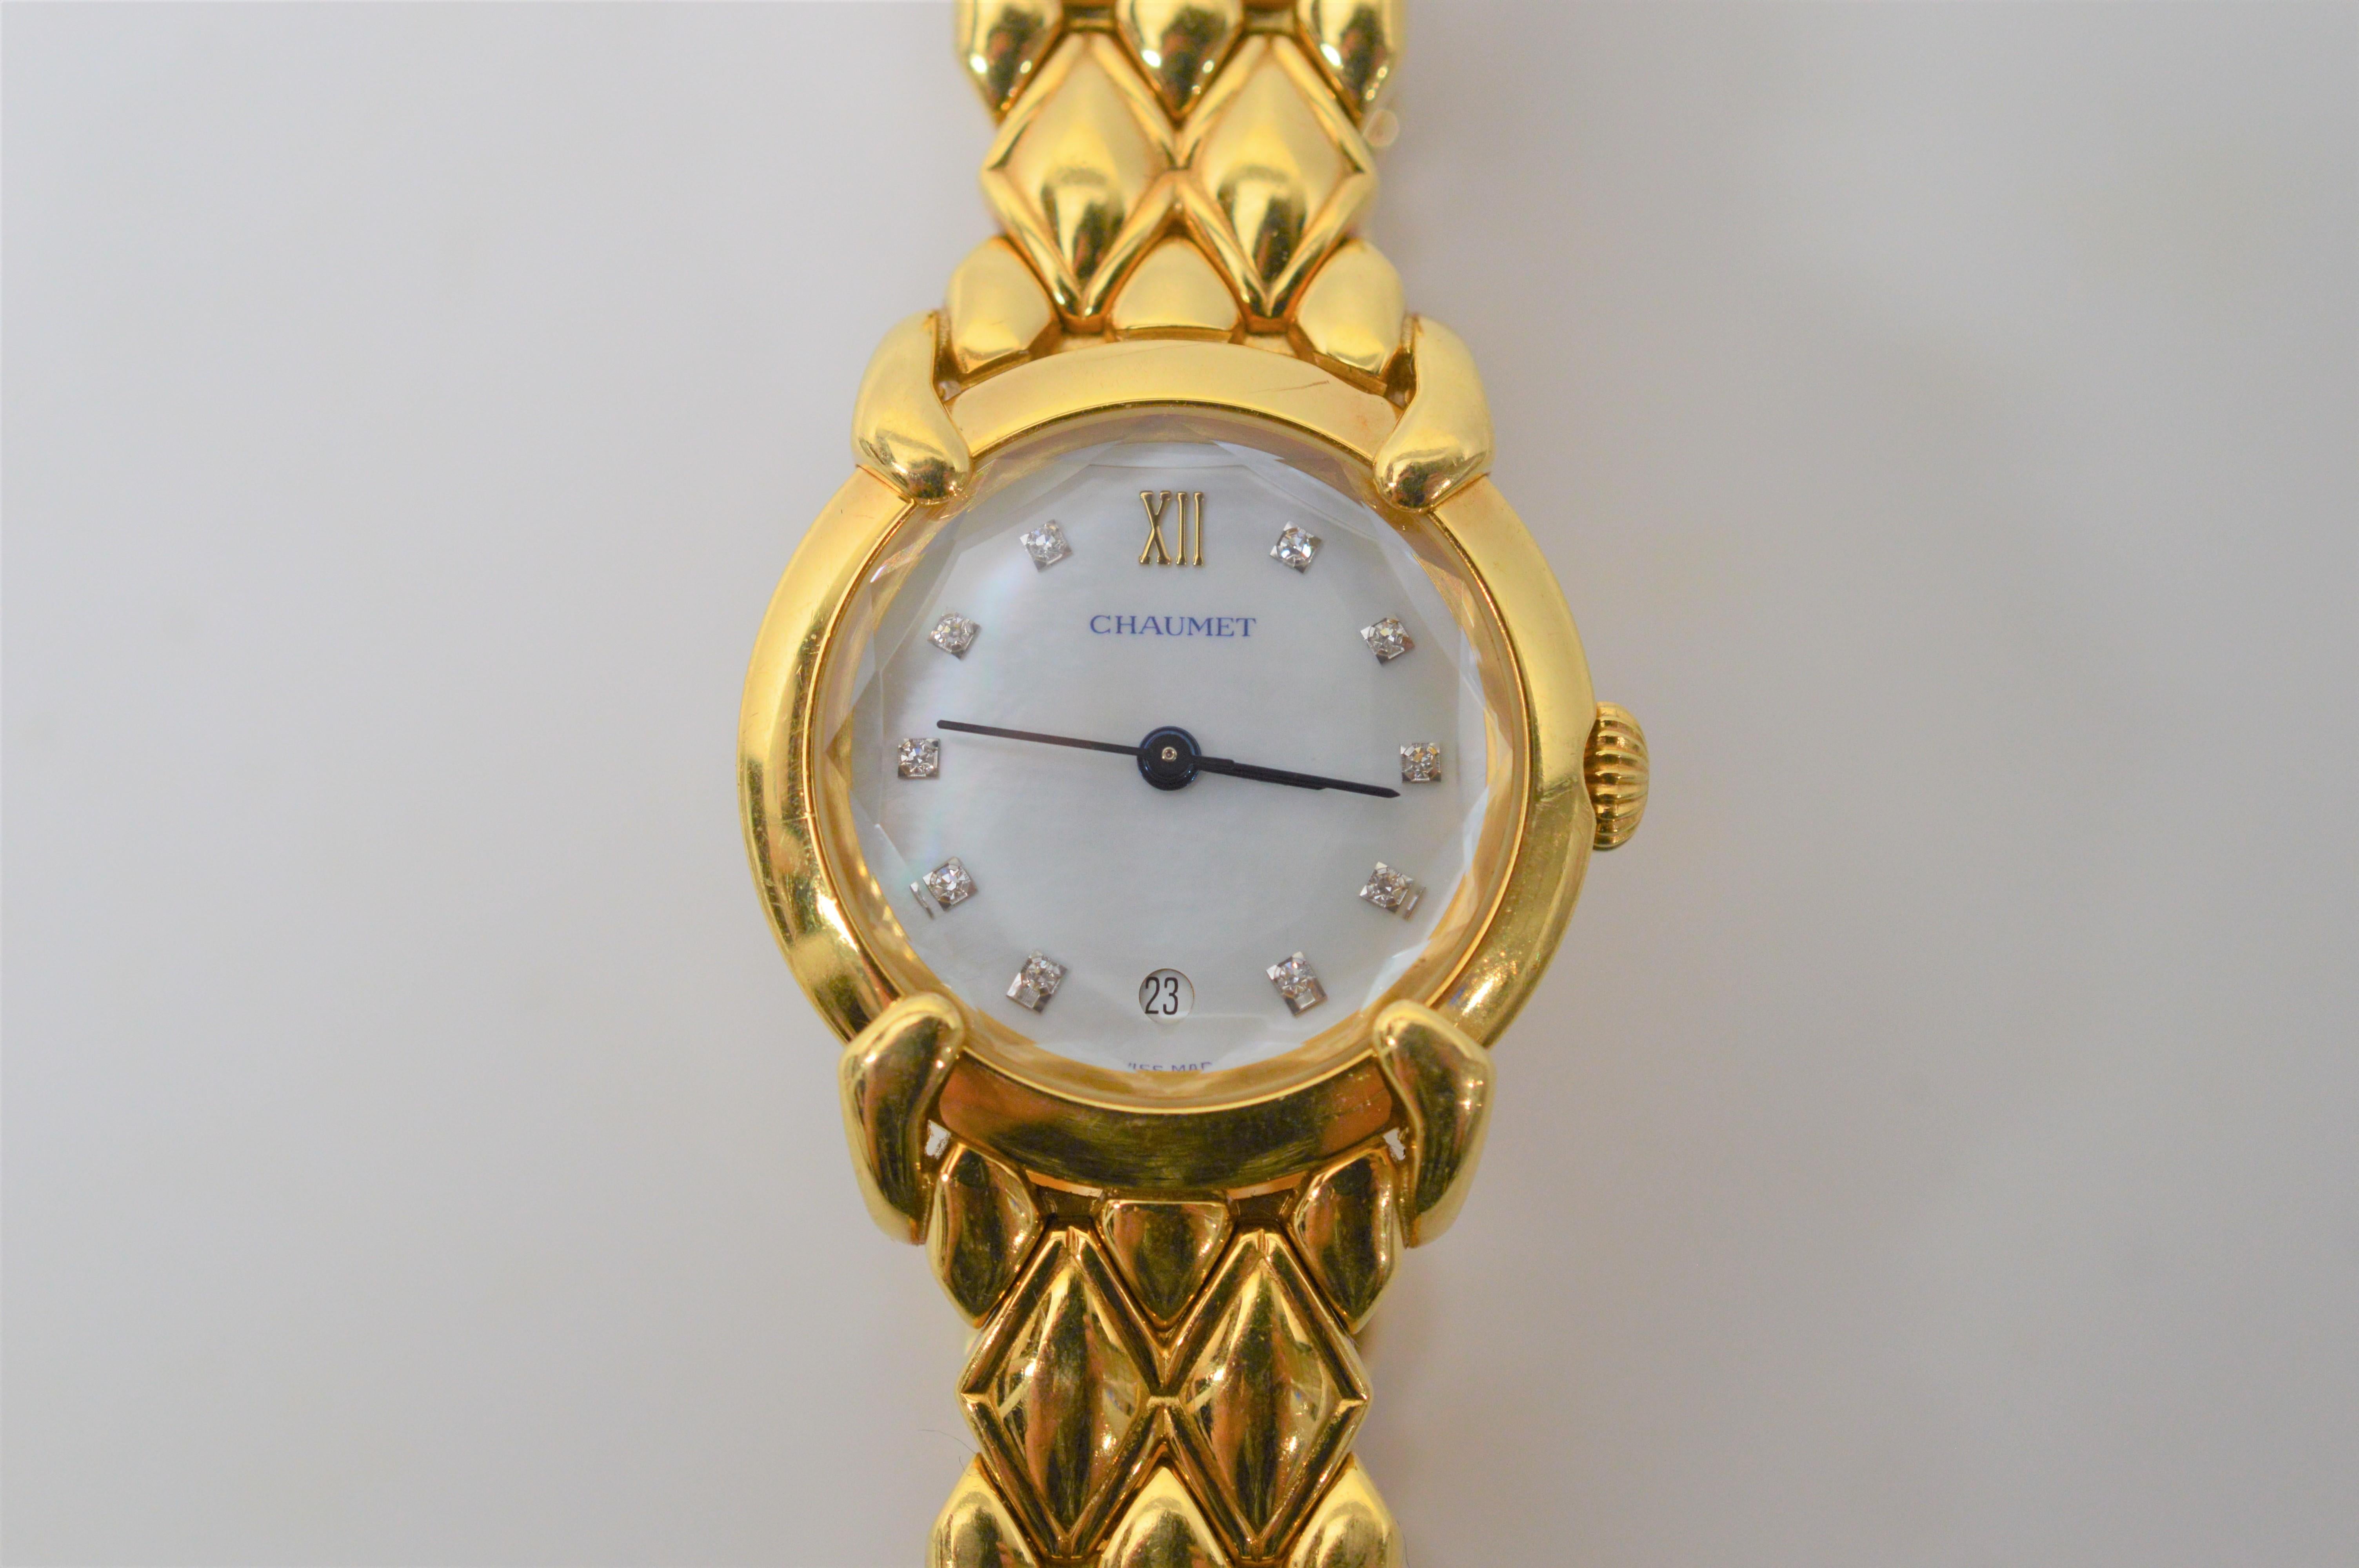 quartz Chaumet Paris Elysses en or jaune 18 carats et diamants pour femmes  Montre-bracelet. Des diamants marquent chaque heure sur le cadran de la montre en nacre de 24 mm. La bande en or jaune 18 carats est équipée d'une fermeture à charnière